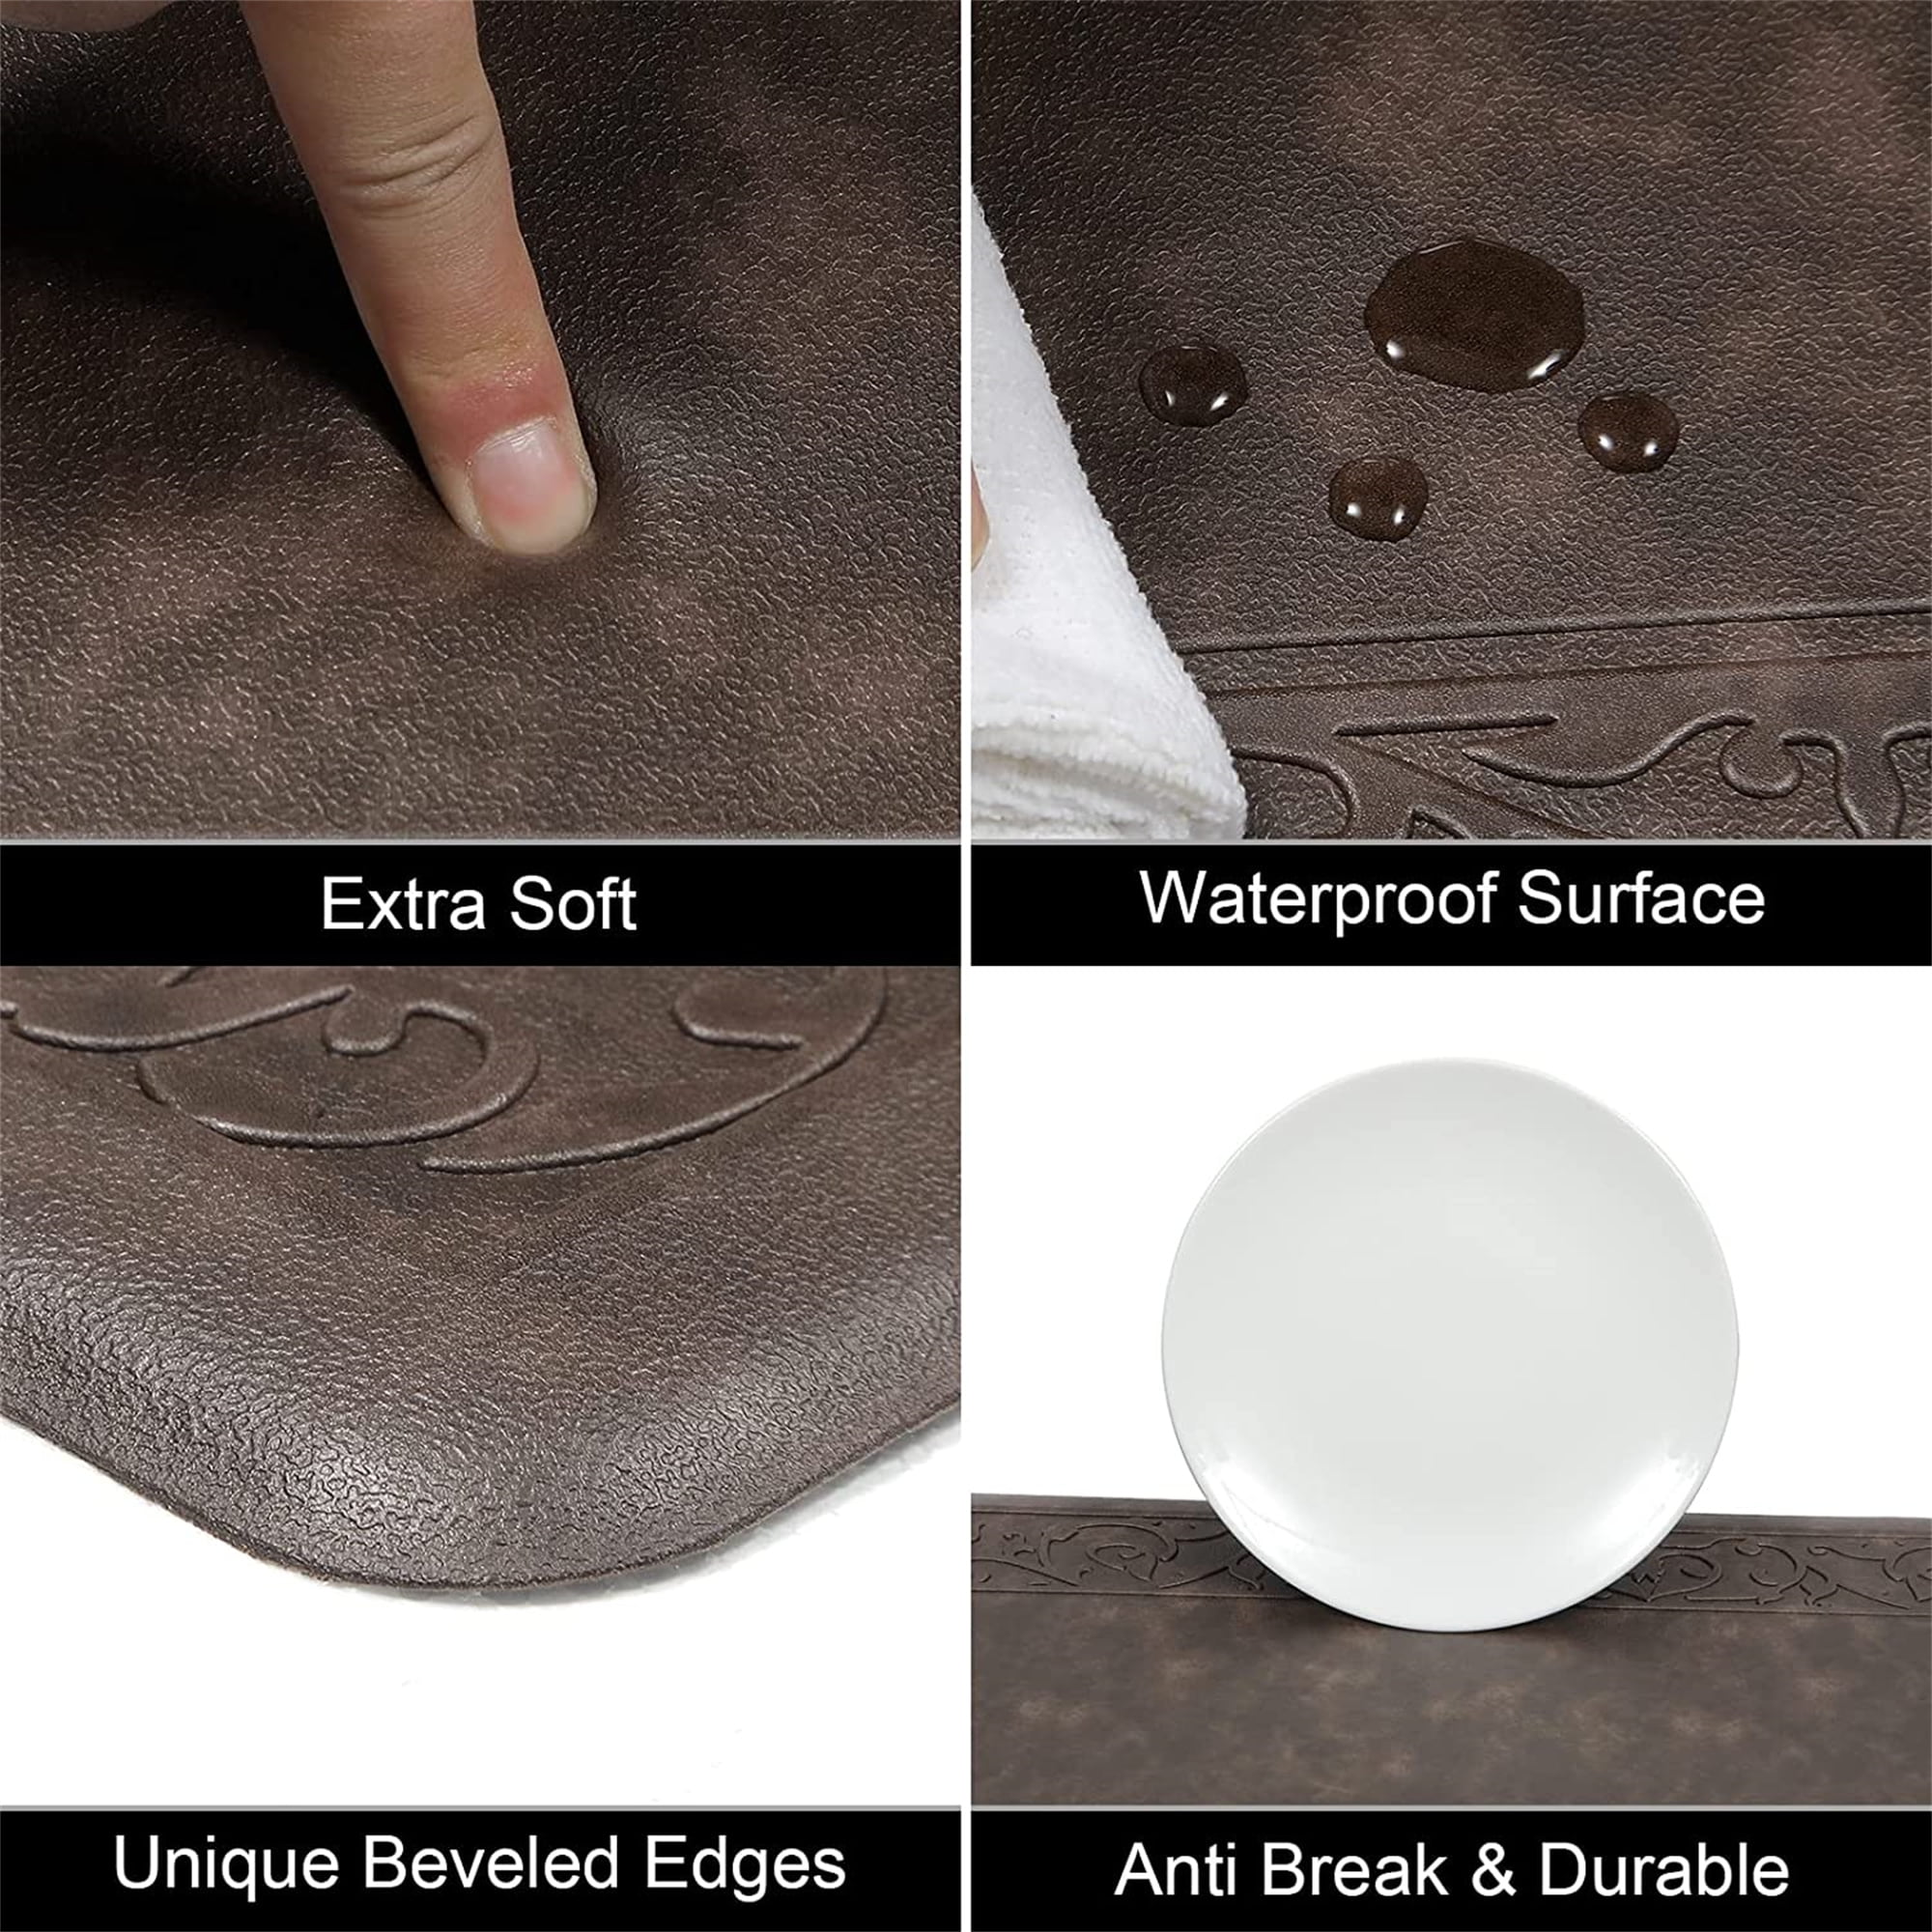 Vyolette Memory Foam Ant-Fatigue Non-Skid Kitchen Mat Latitude Run Color: Beige